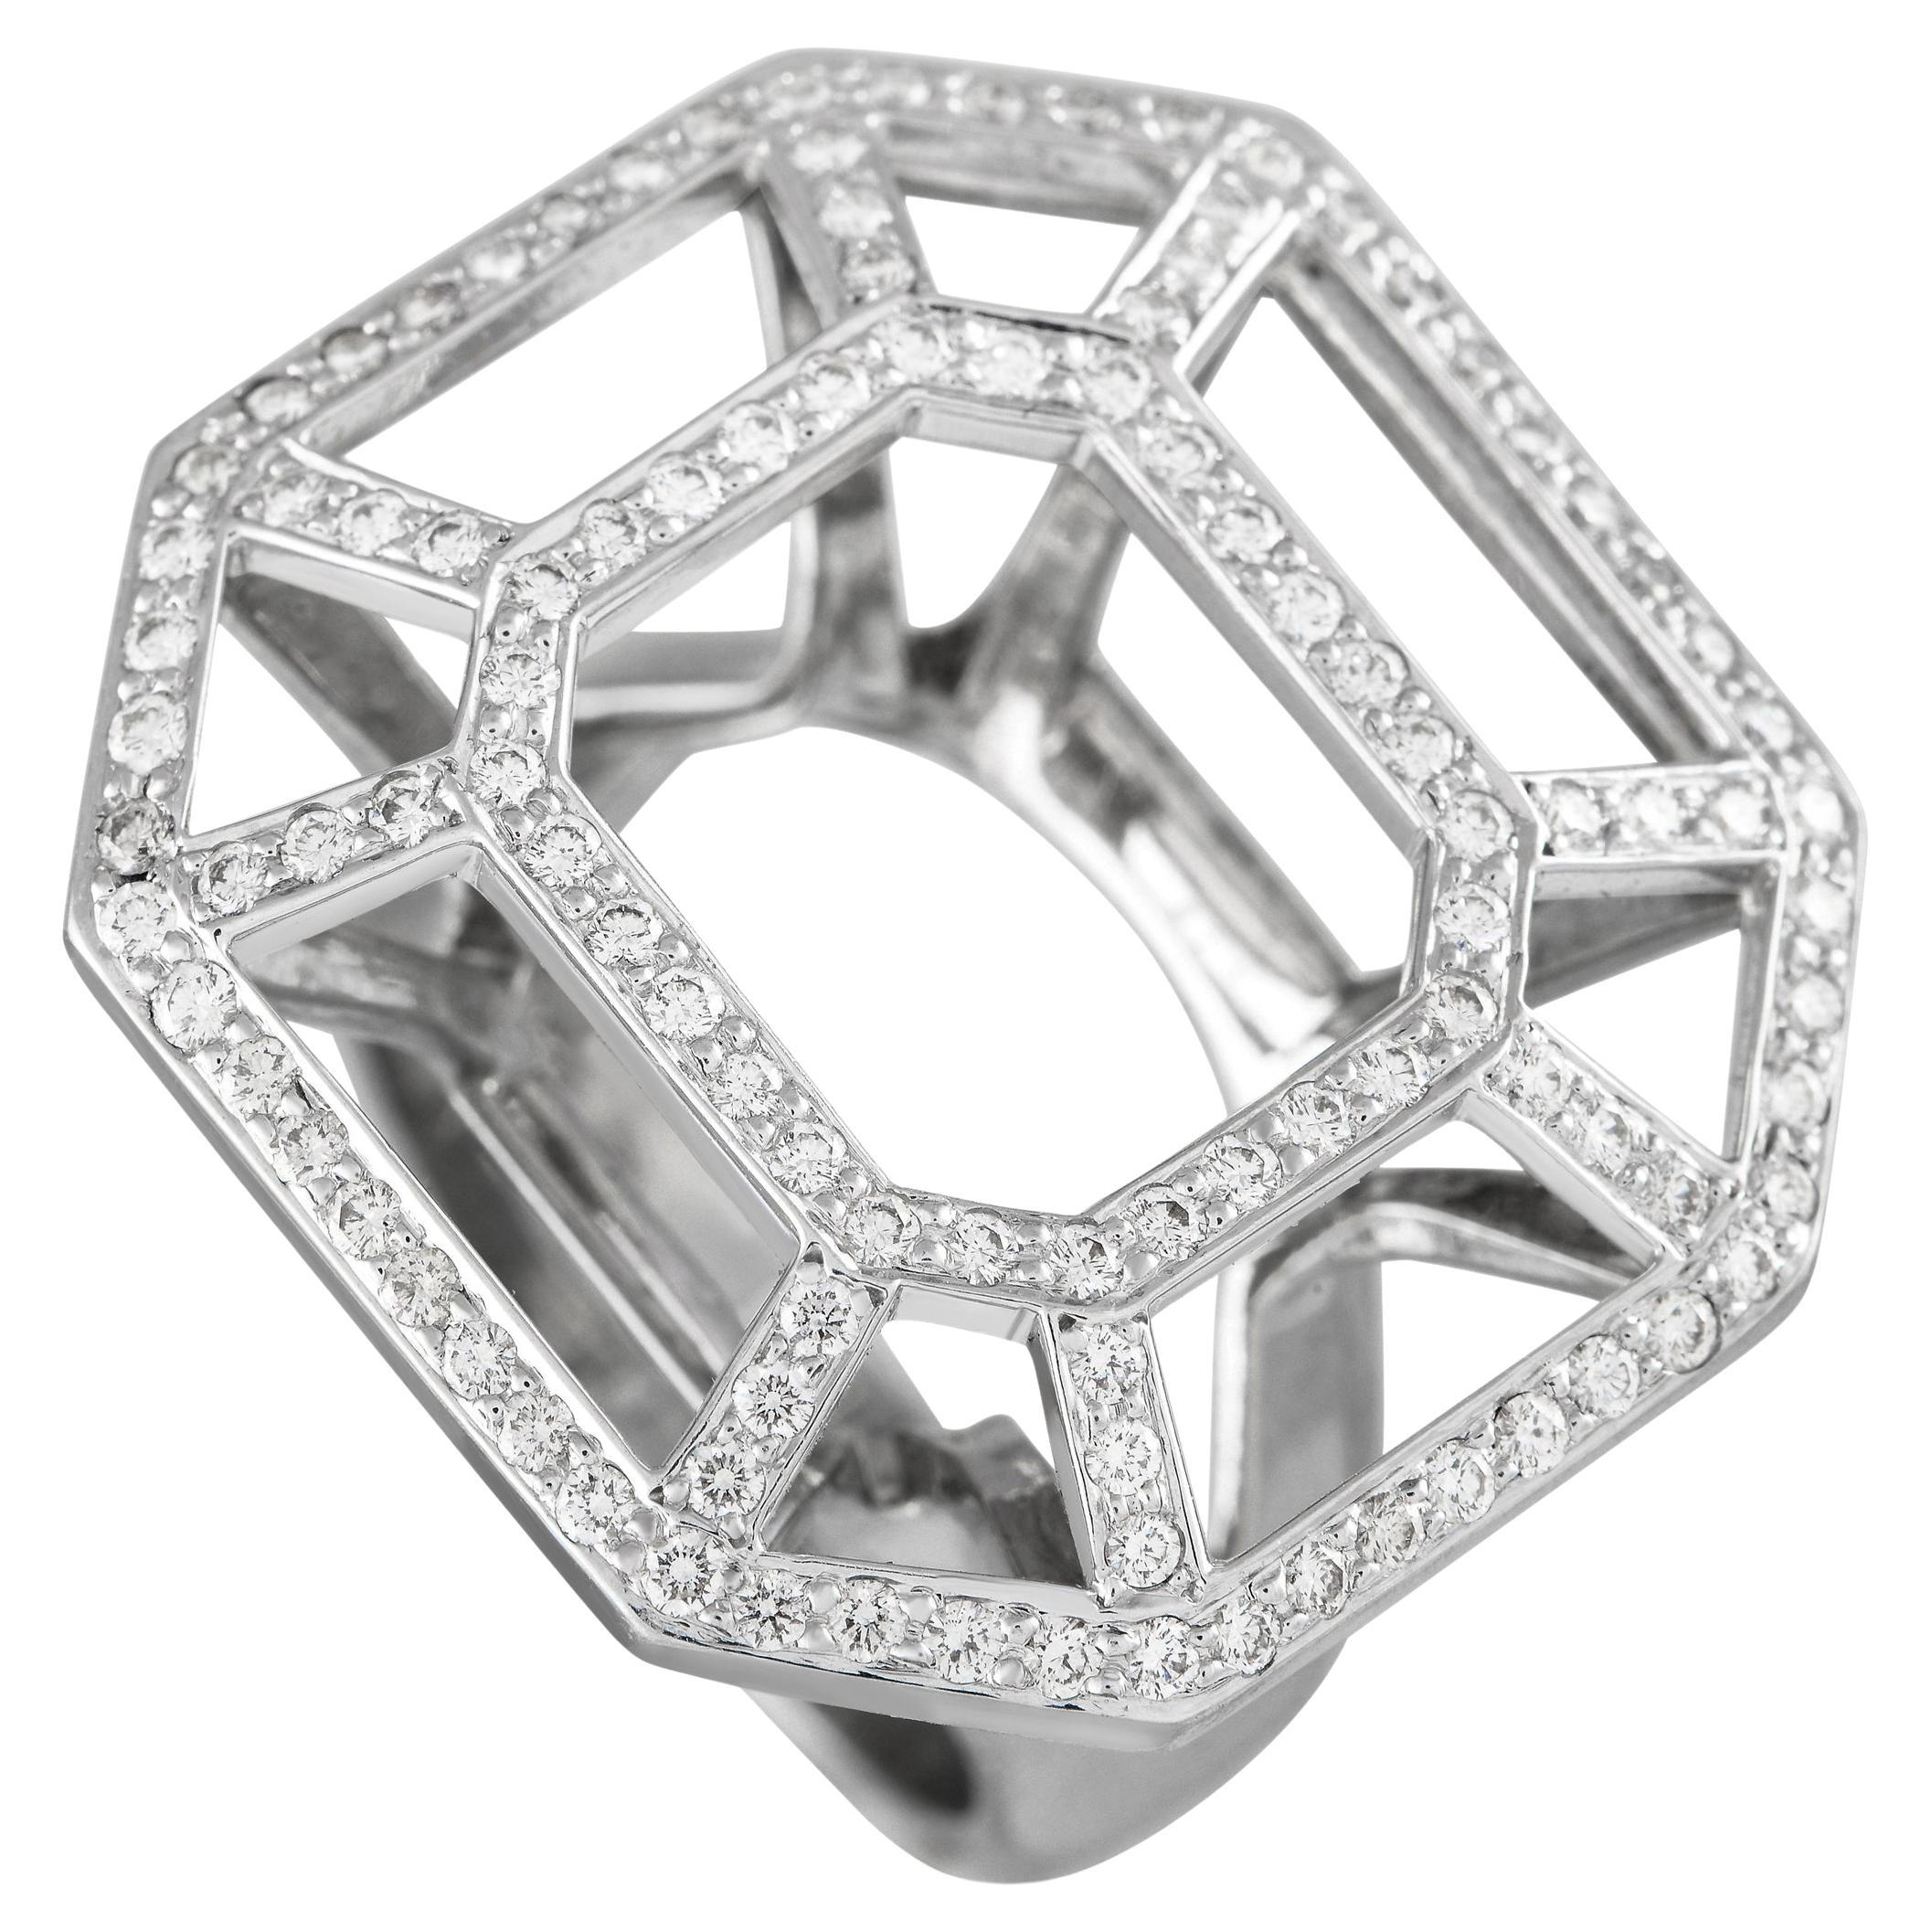 Tiffany & Co. Paloma Picasso, bague géométrique en or blanc 18 carats avec diamants de 1,25 carat